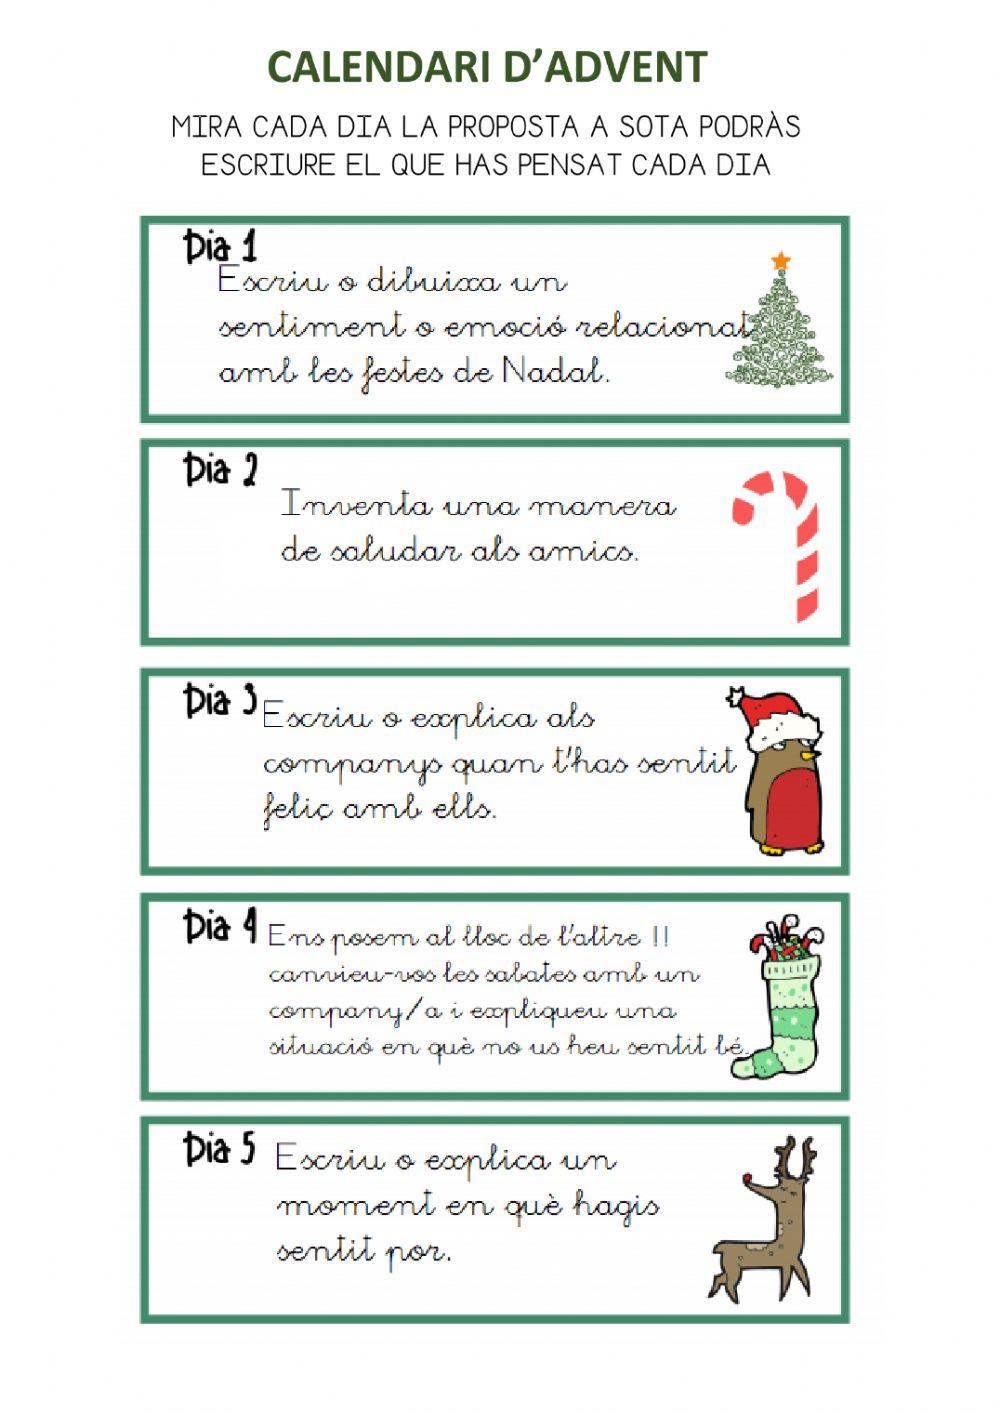 Calendari d'advent dia 1 a 5